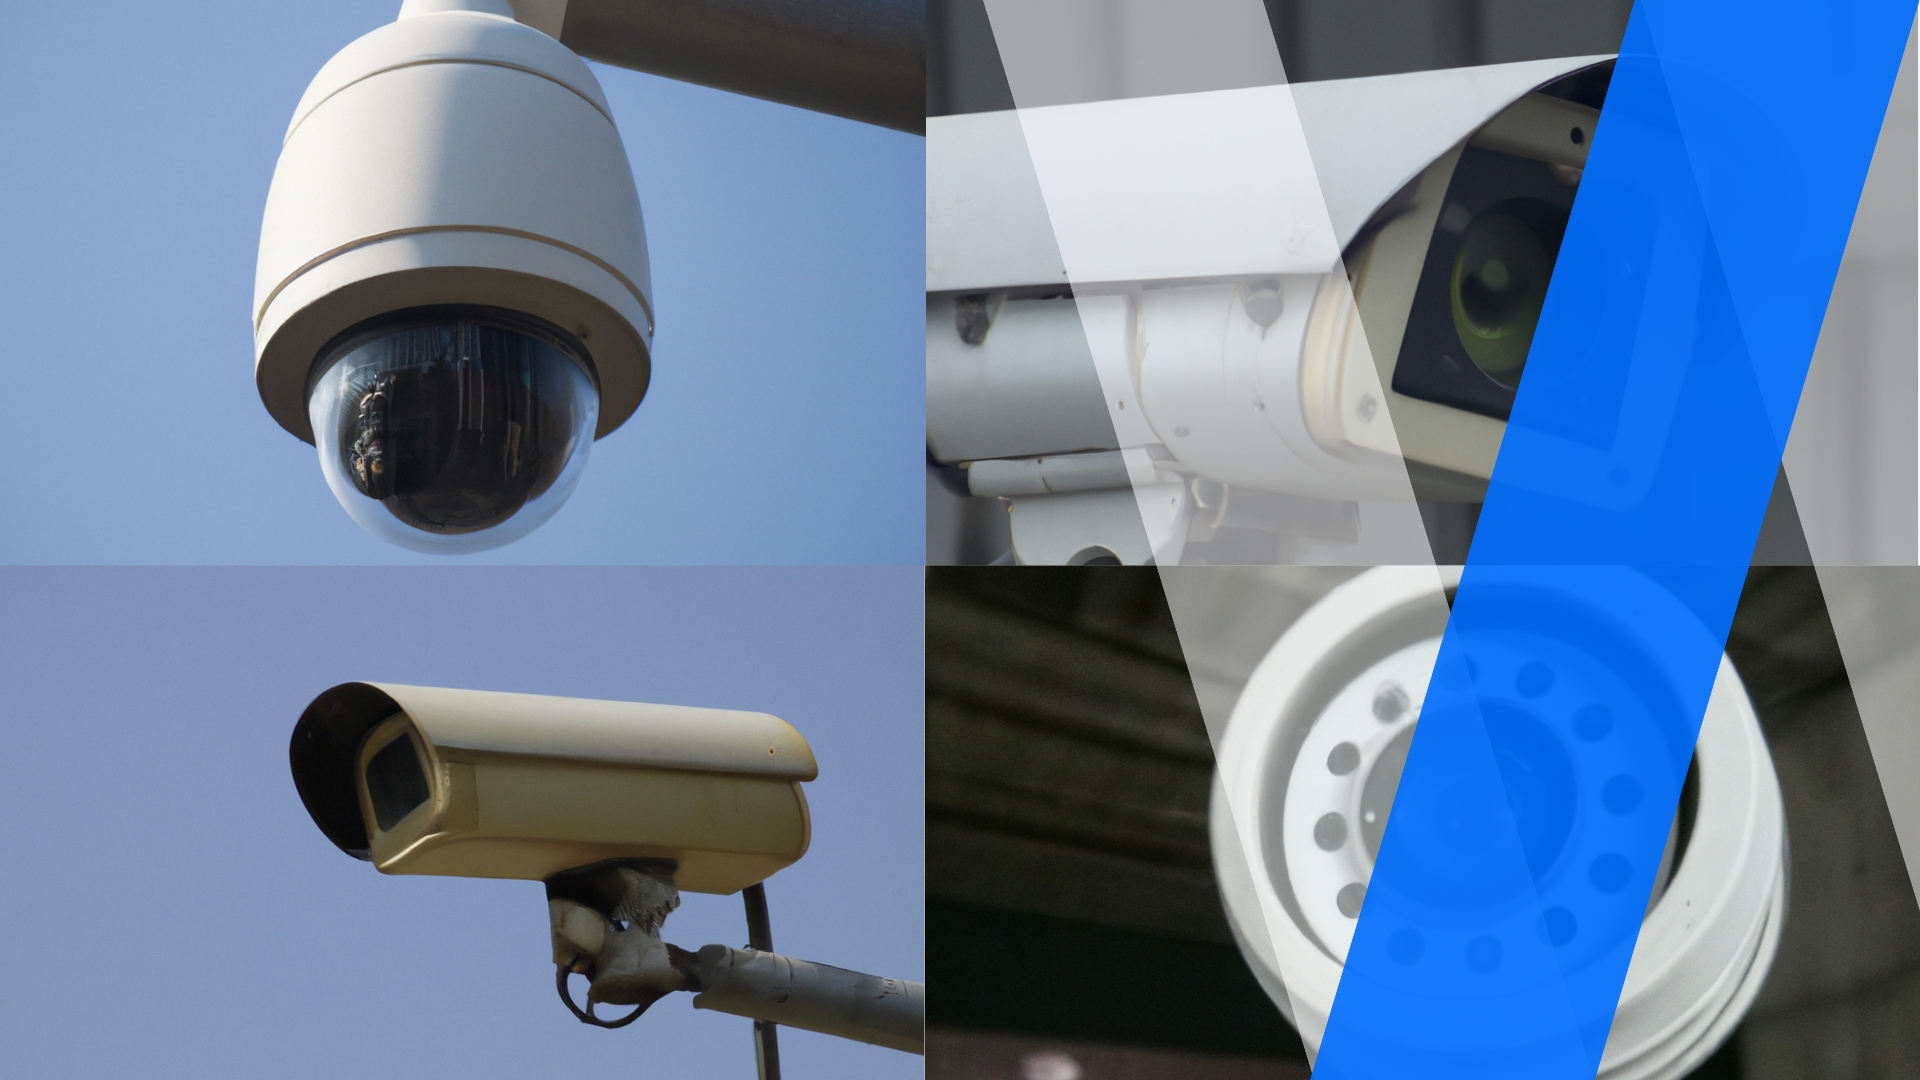 Montage de quatre types différents de caméras de sécurité sur fond de ciel bleu, chacune représentant une évolution dans la technologie de la vidéosurveillance.